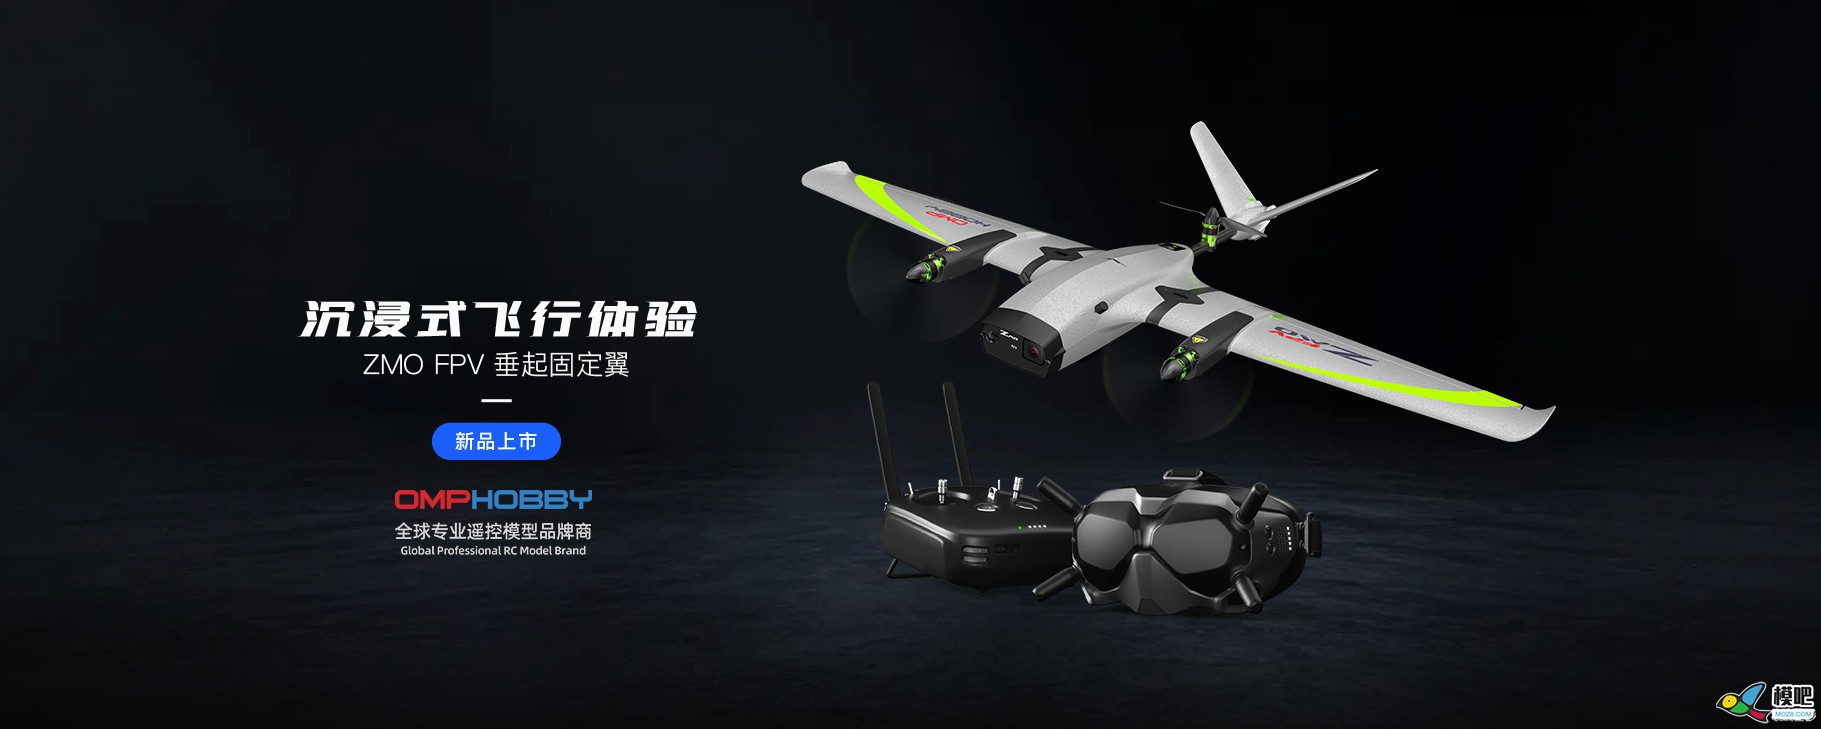 潮玩无人机-垂起固定翼FPV【ZMO】| 全新发售 无人机,航模,固定翼,飞手,飞行体验 作者:边锋领域 822 